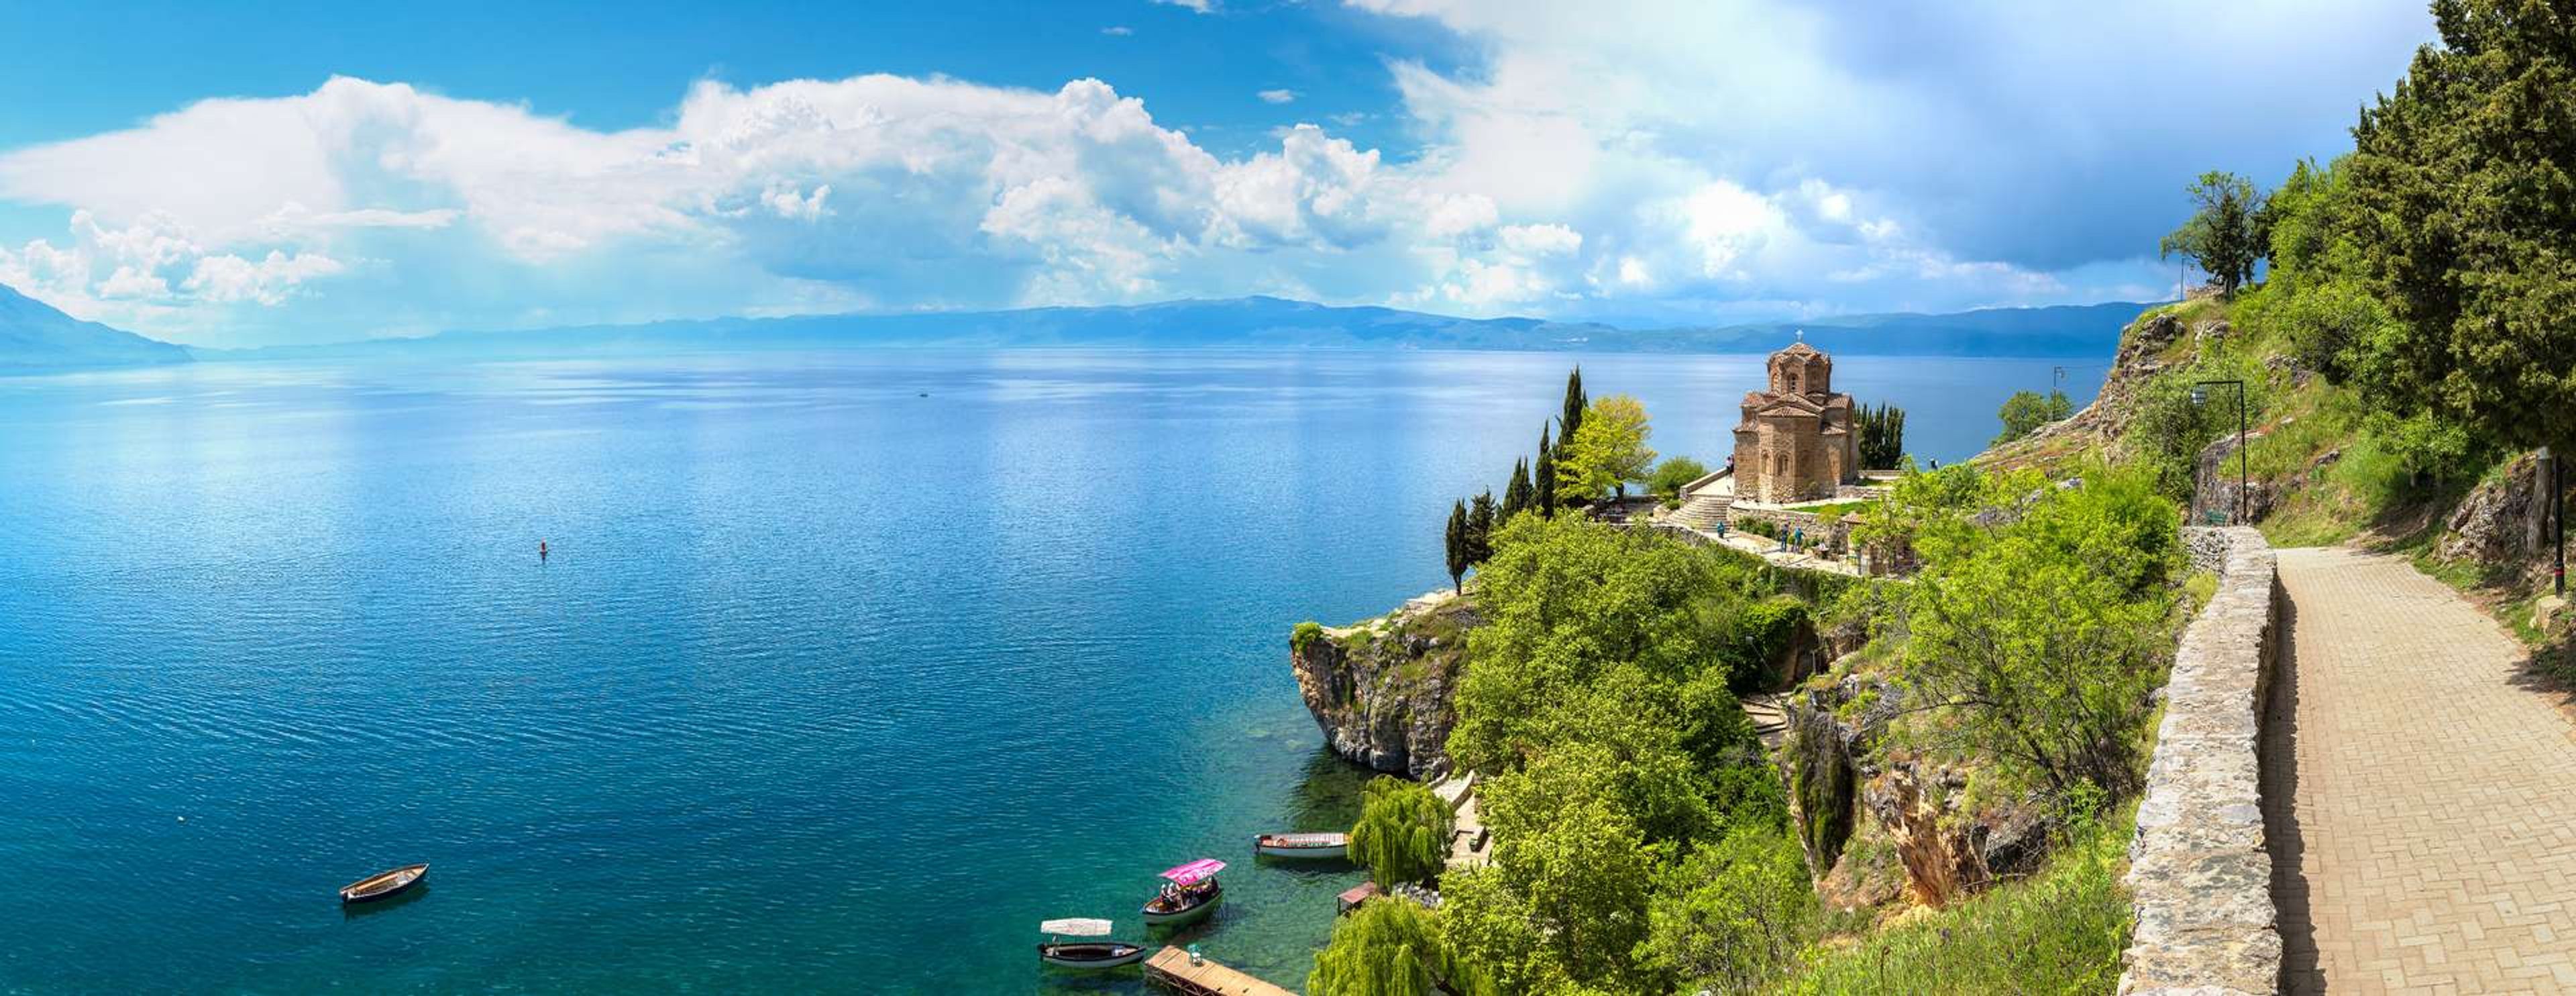 Macedonië Lake Ohrid1